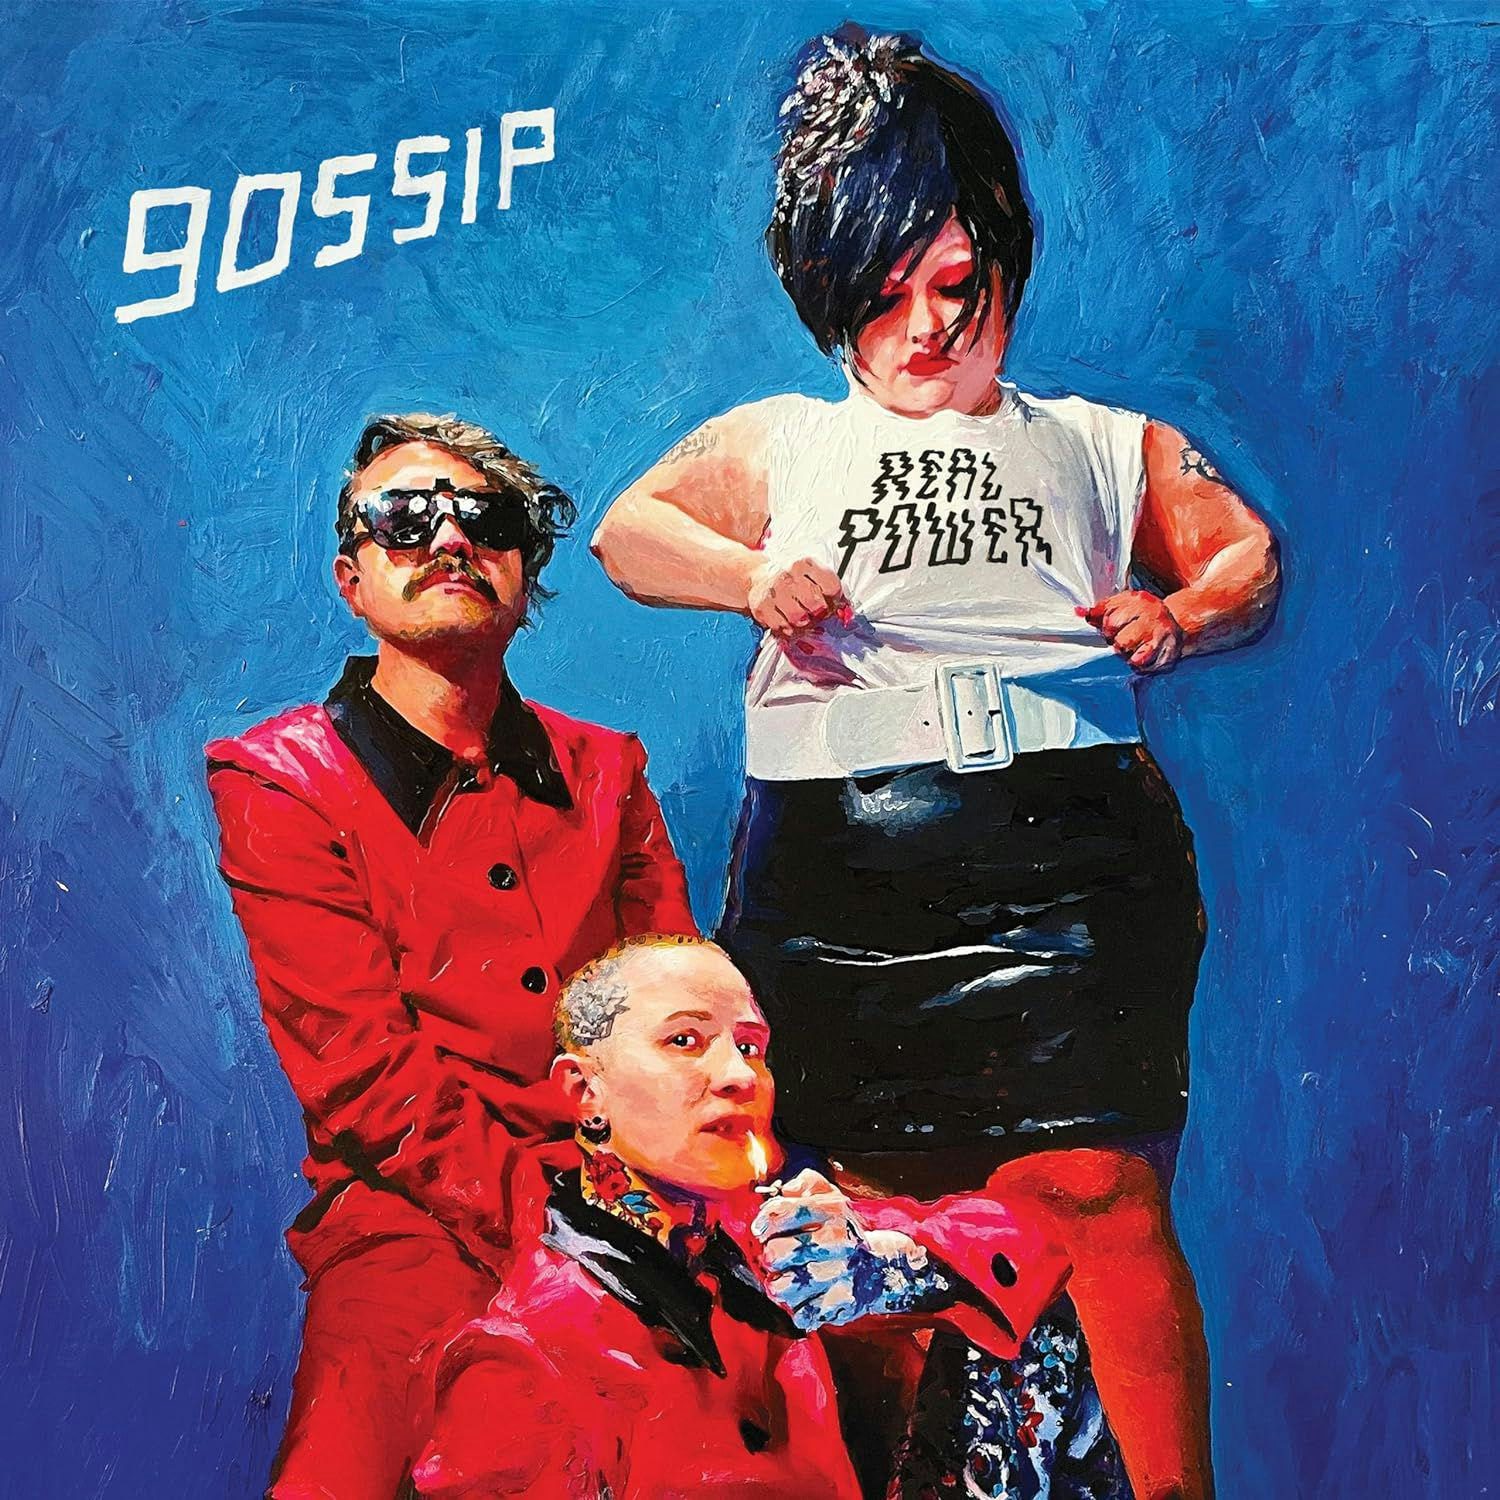 Рок Sony Gossip - Real Power (Black Vinyl LP)